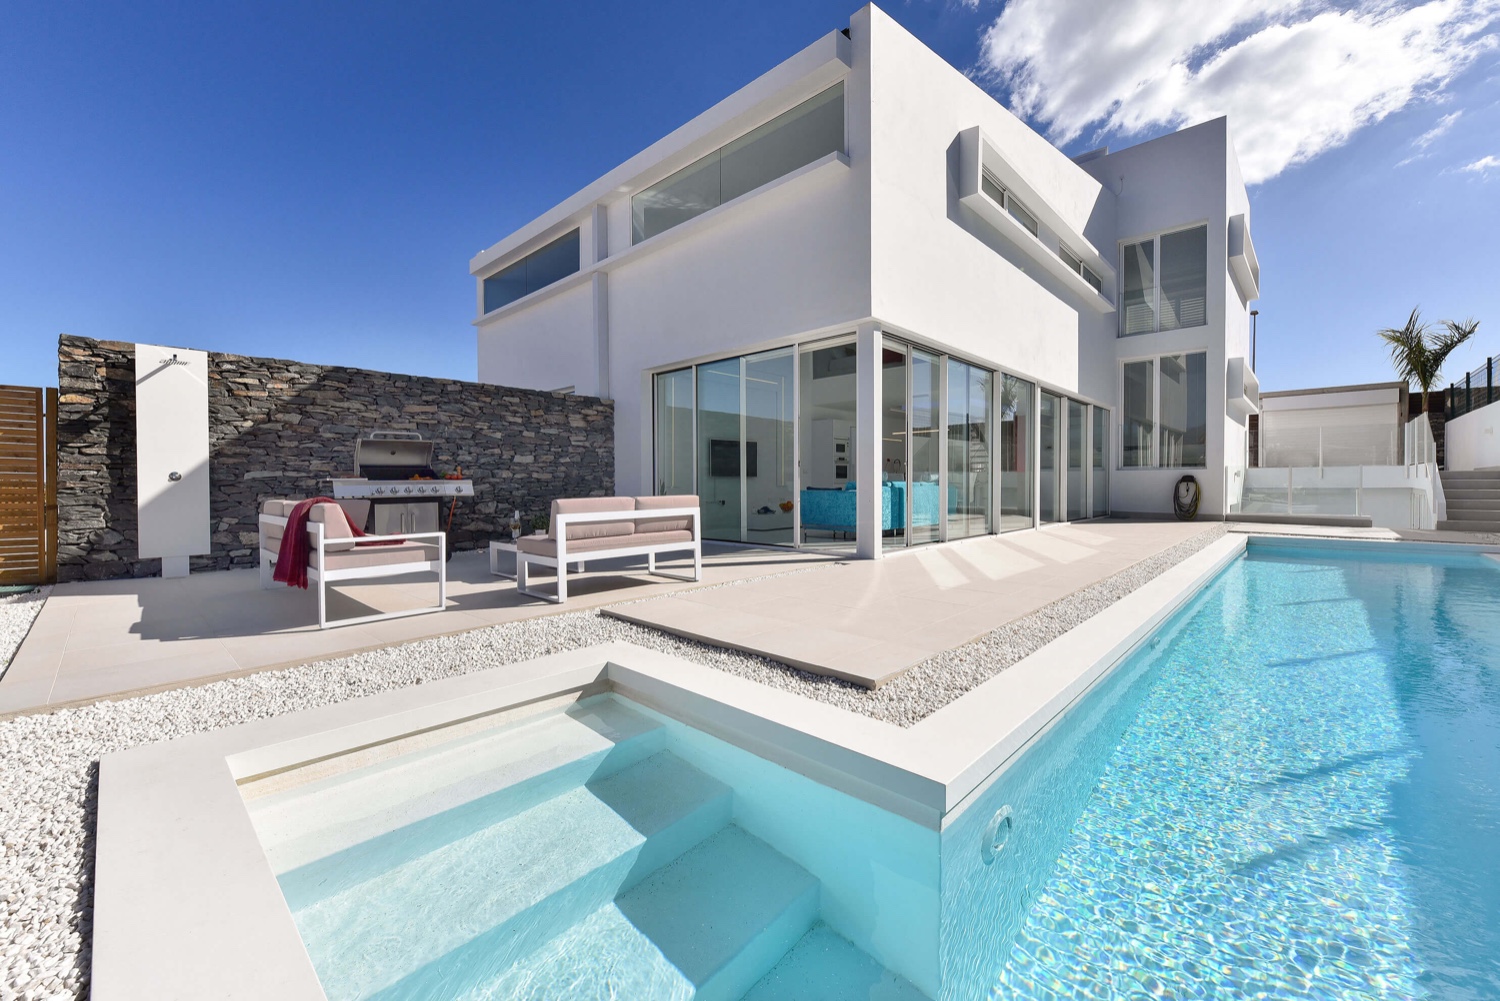 Prachtige moderne villa voor maximaal 8 personen met hoogwaardige apparatuur, groot verwarmd privézwembad en ideale locatie op slechts enkele minuten van het strand van Meloneras en Maspalomas